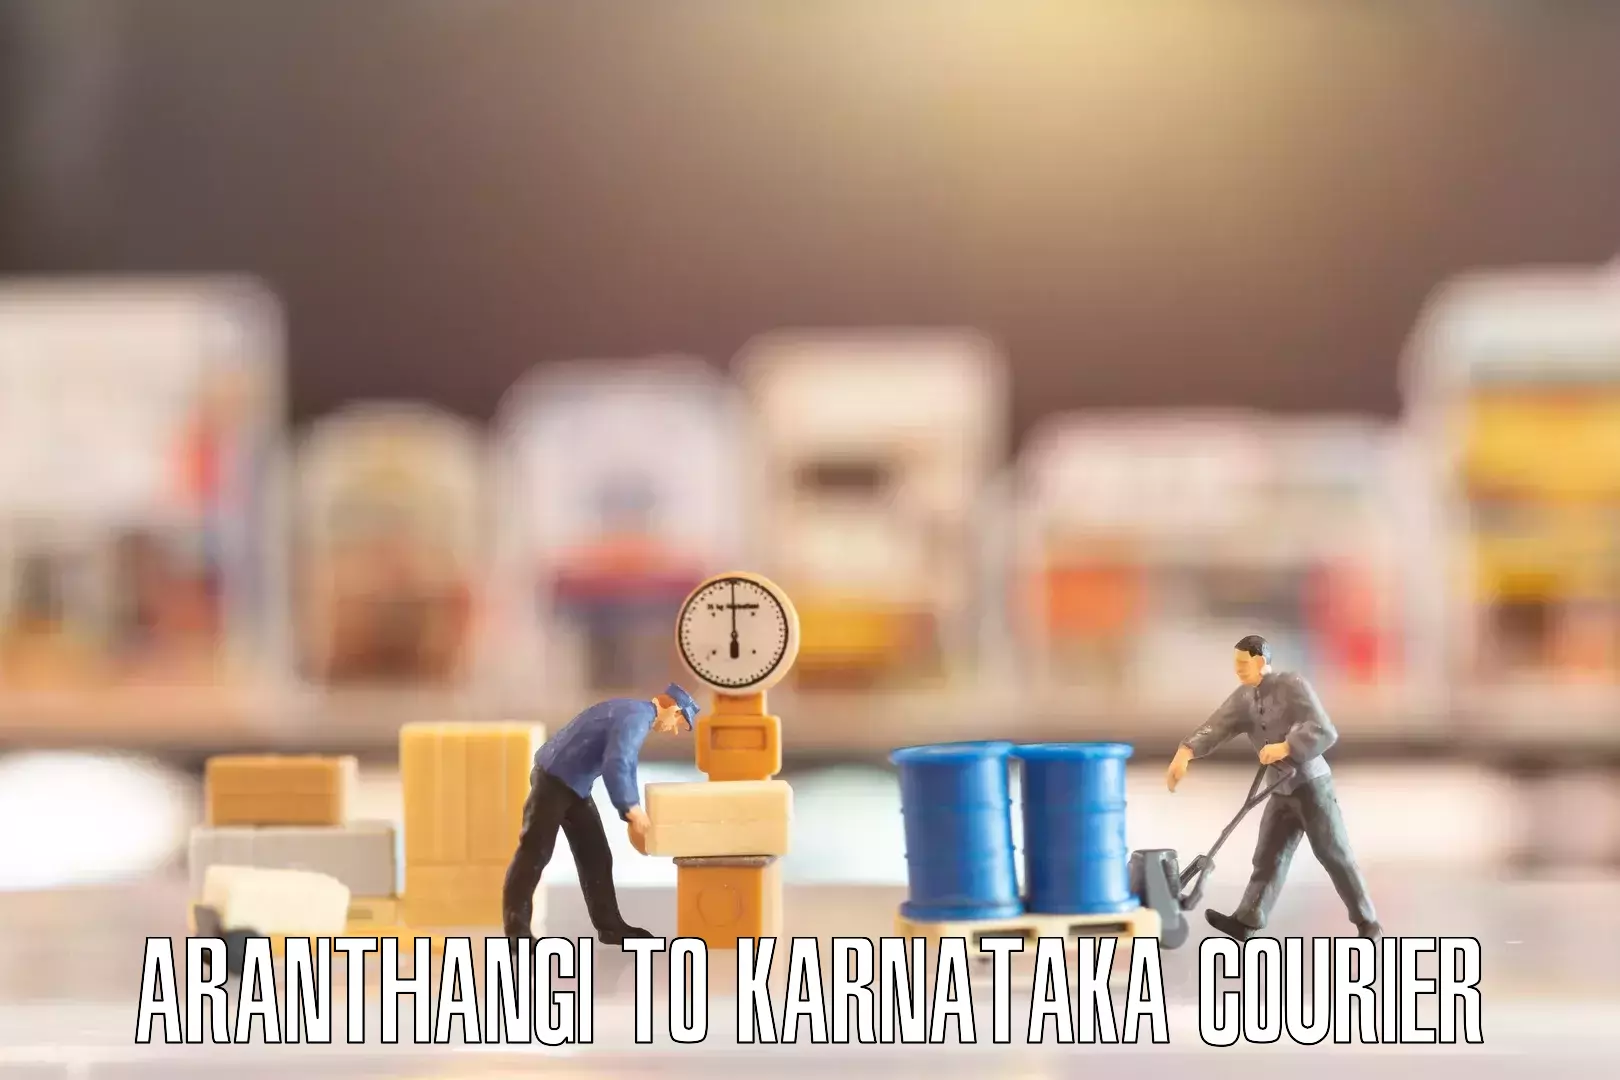 Nationwide furniture transport in Aranthangi to Yellare